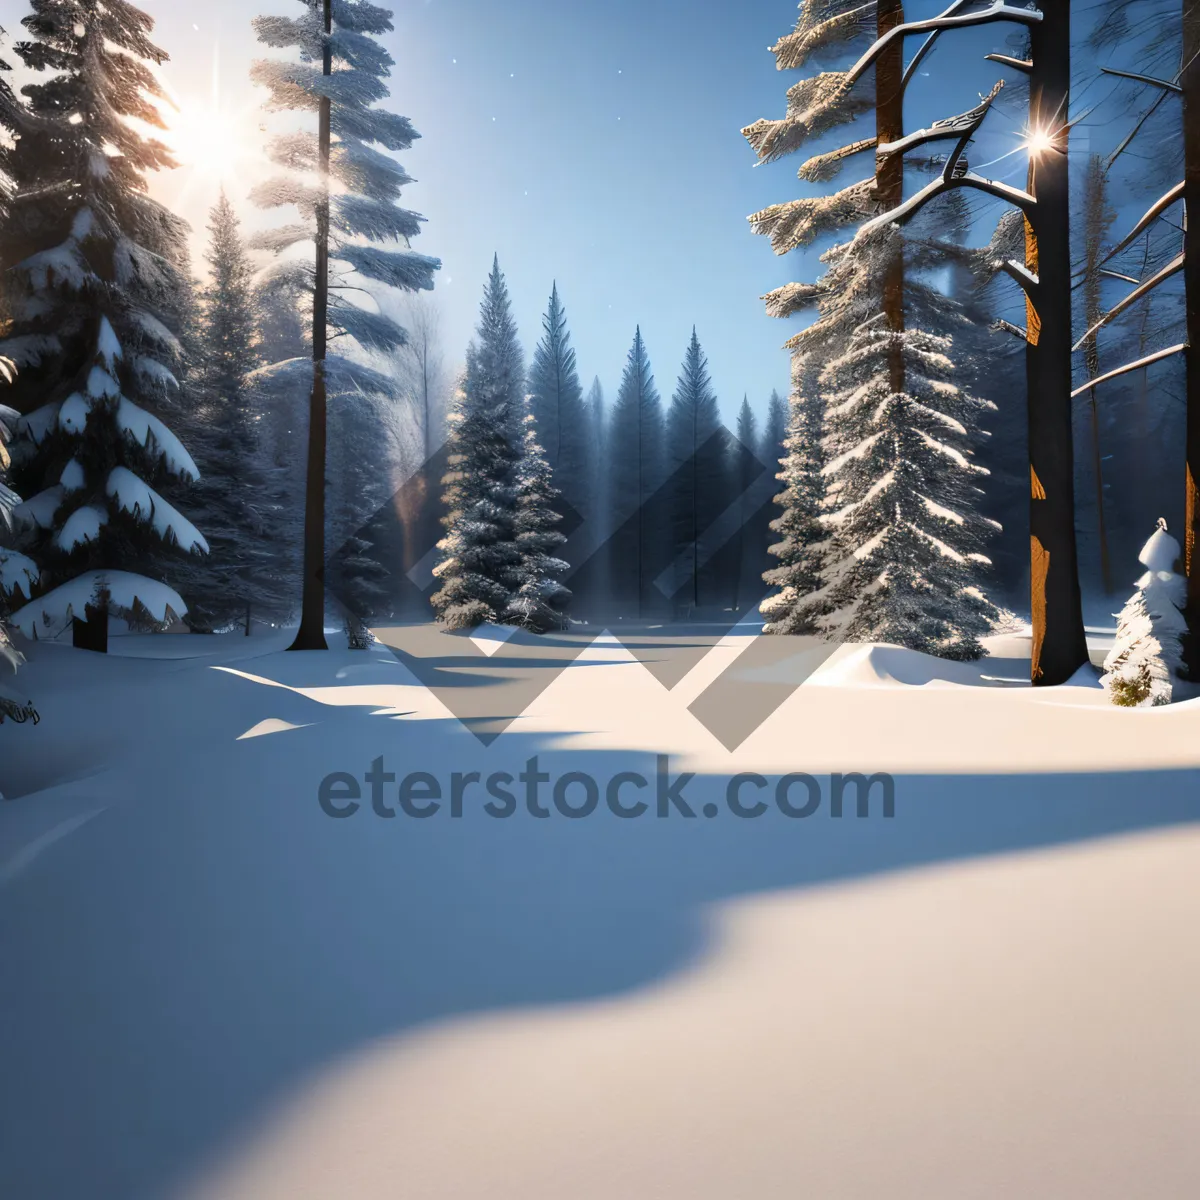 Picture of Frozen Majesty: A Breathtaking Snowy Mountain Landscape